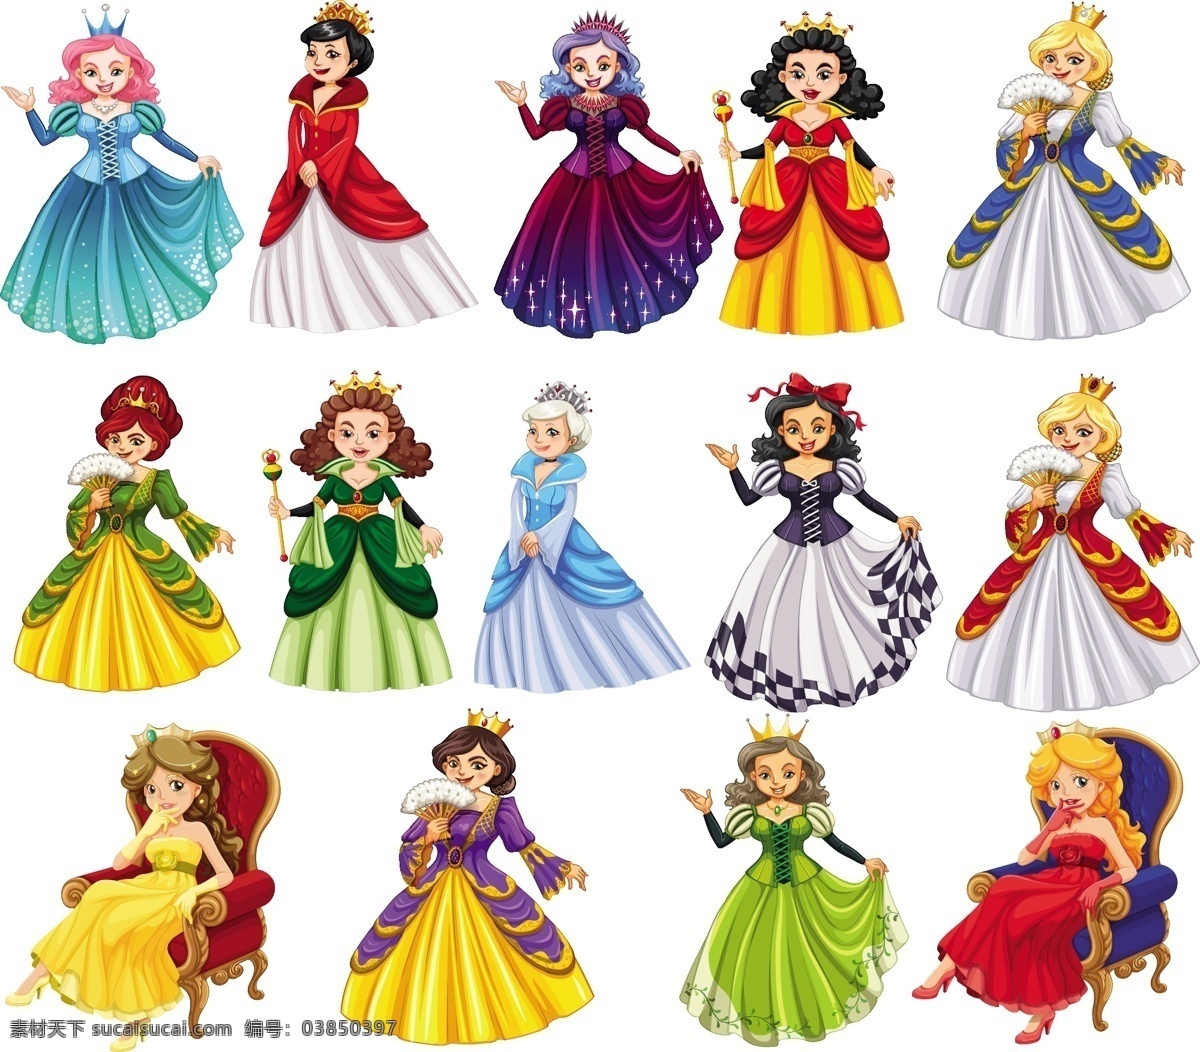 童话公主 皇冠 创意 公主 梦想 仙女 创造力 女王 童话 色彩 幻想 想象力 集 故事 彩色 魔杖